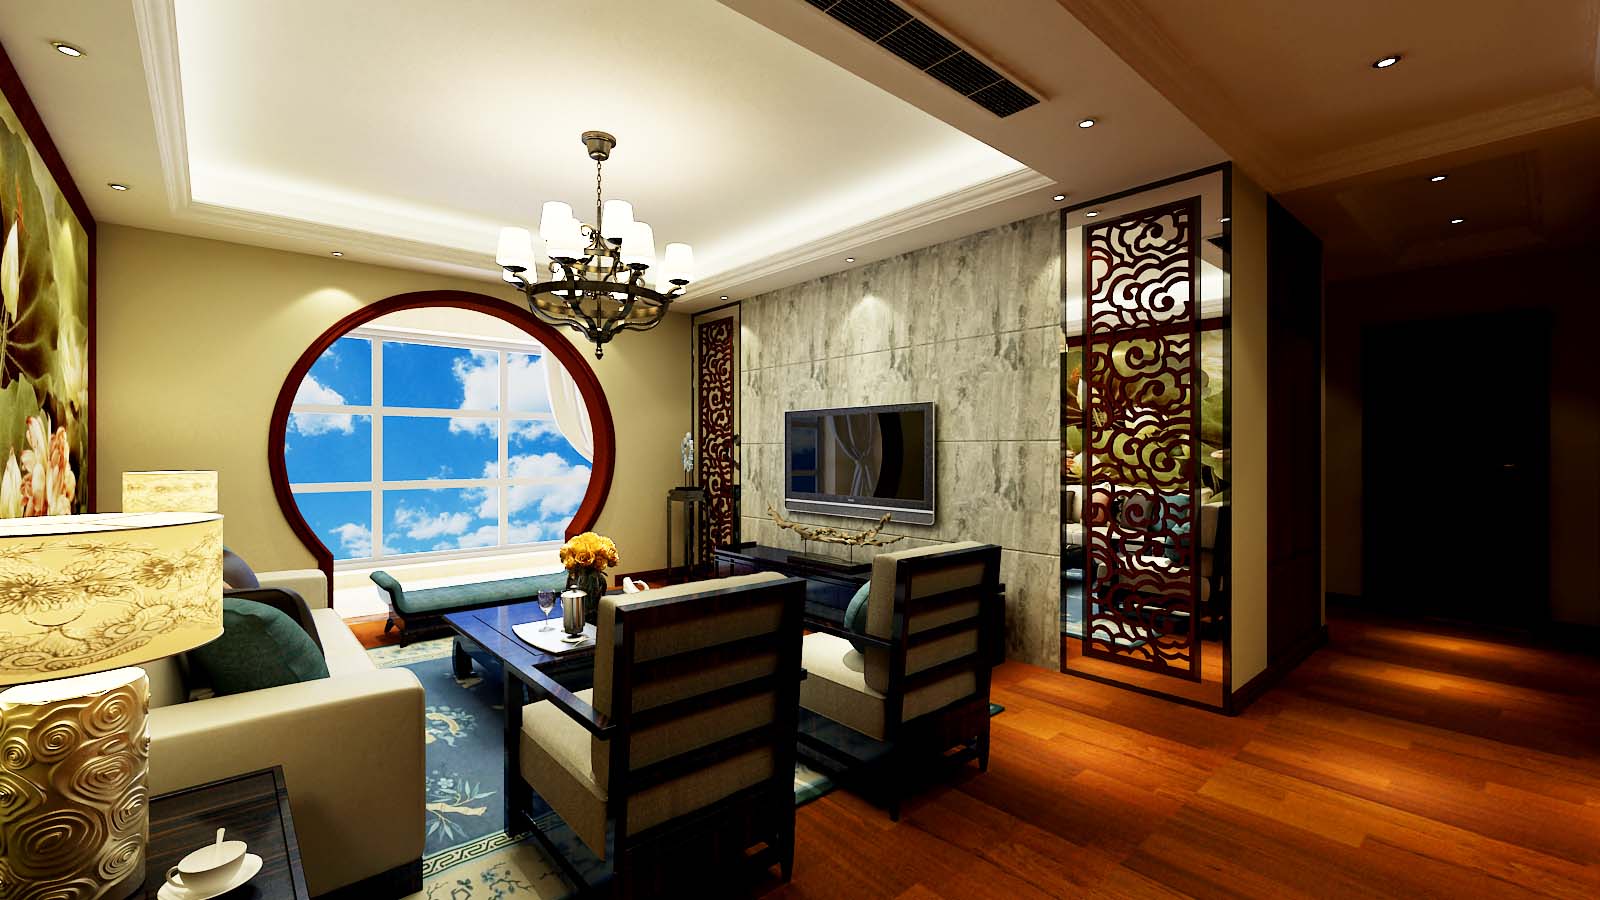 中式风格 中式设计 中式装修 新中式 君子兰 君子蘭 君子兰装饰 客厅图片来自流落四方在如意花园中式设计的分享